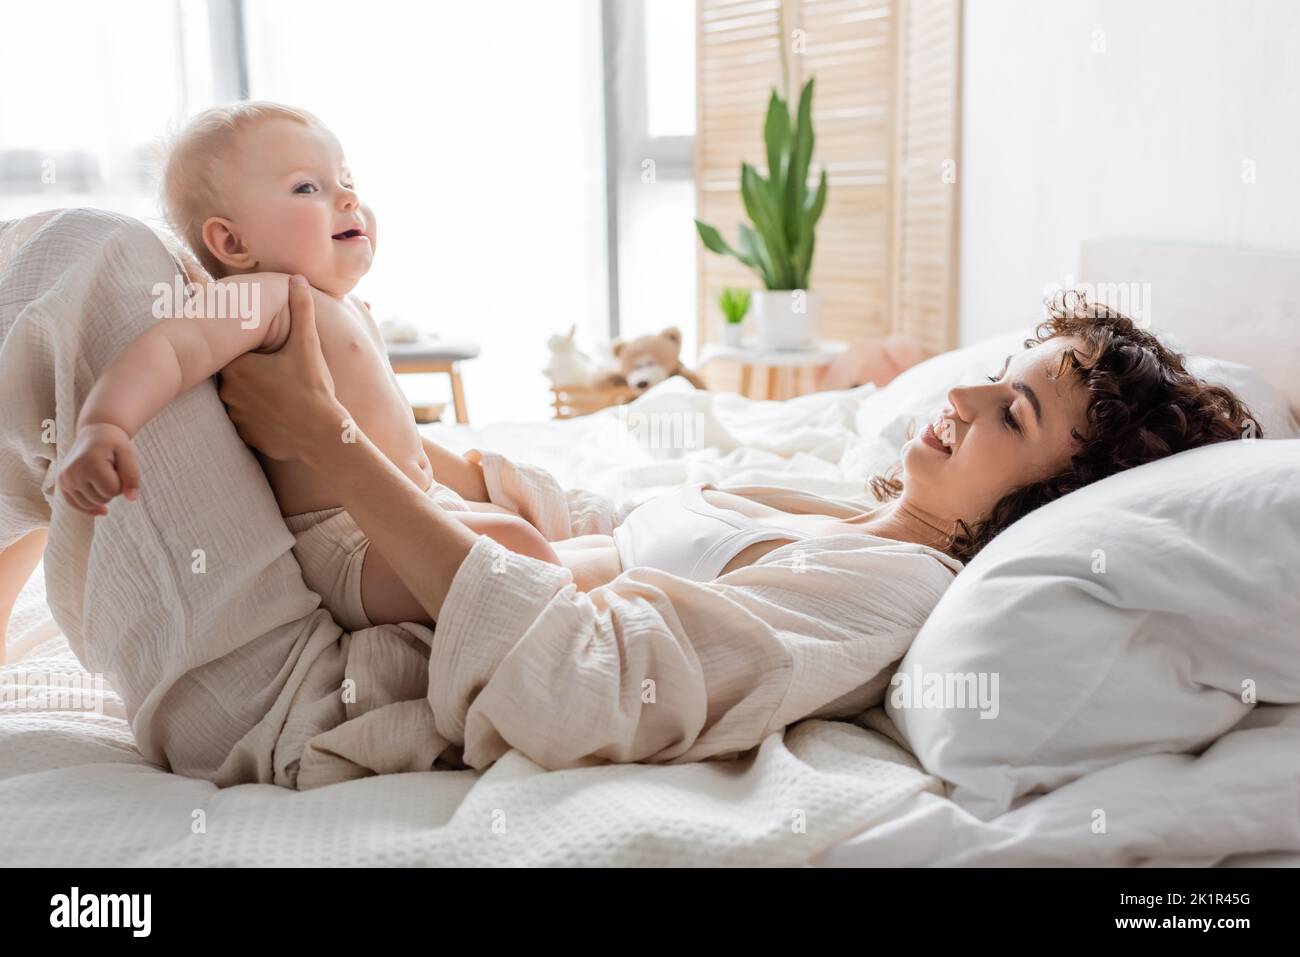 bonne femme en chaise longue couchée sur le lit avec petite fille, image de stock Banque D'Images